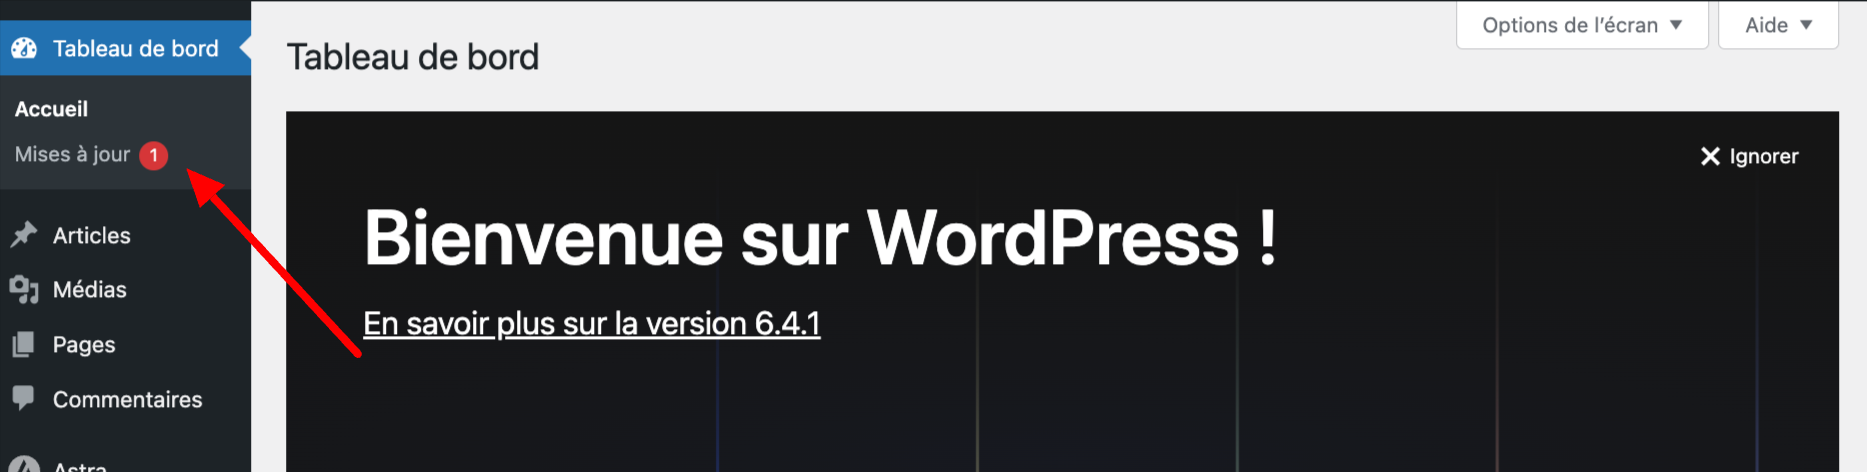 L'interface d'administration de WordPress vous signale quand une mise à jour est disponible.